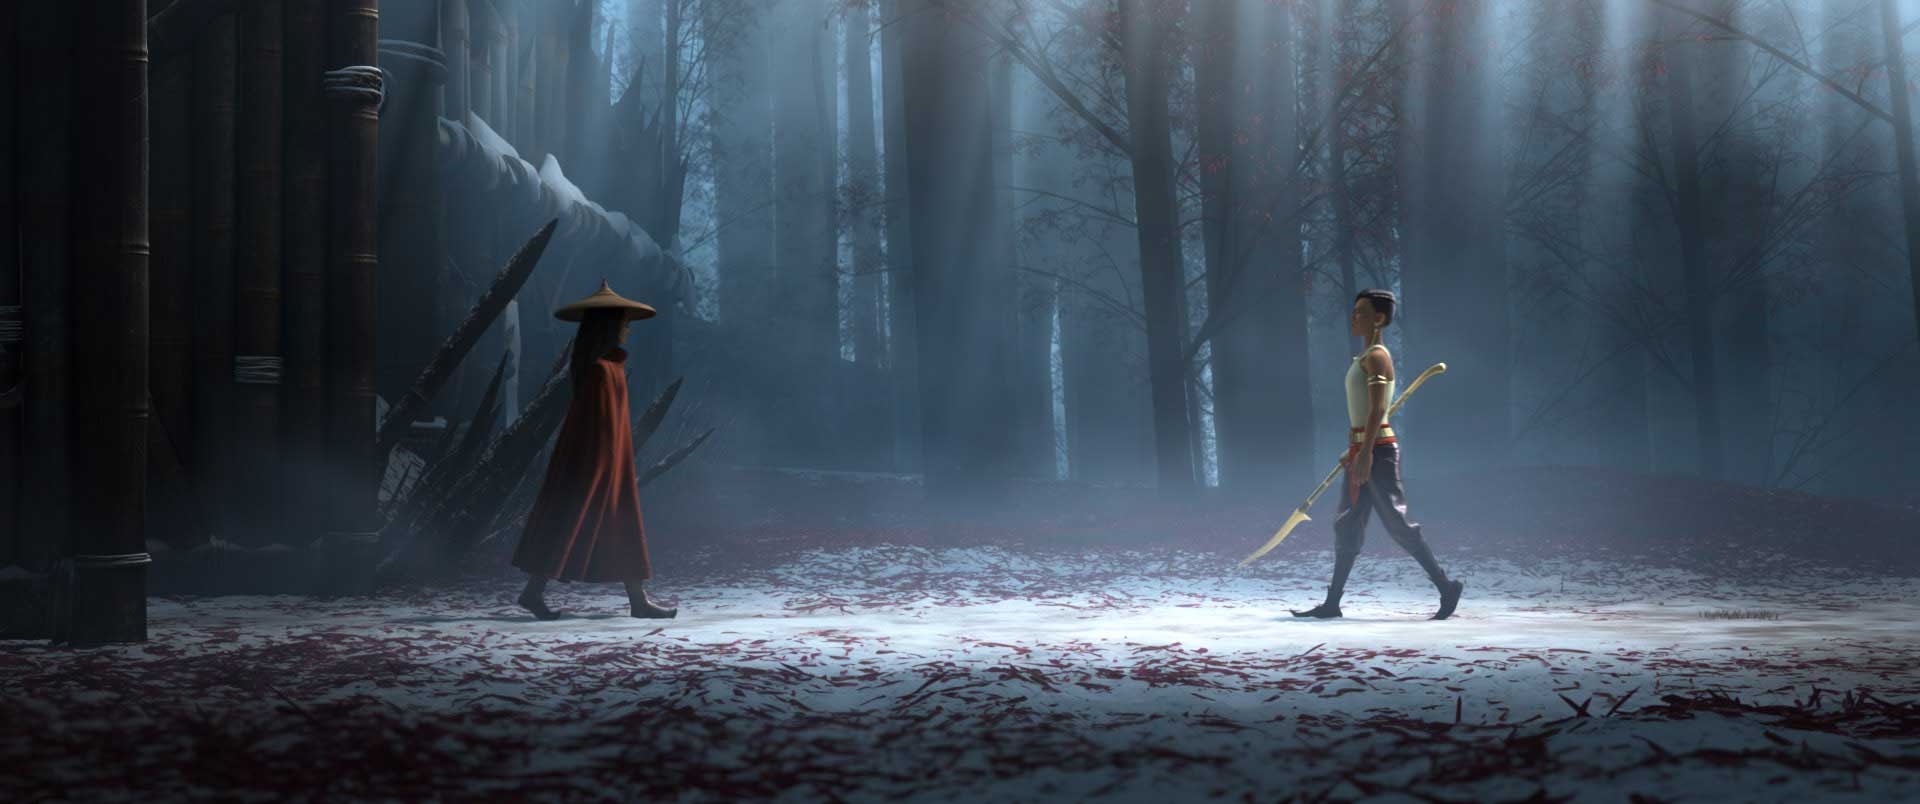 نبرد دو شخصیت با سلاح های قدیمی به سبک سامورایی ها وسط جنگل انیمیشن رایا و آخرین اژدها